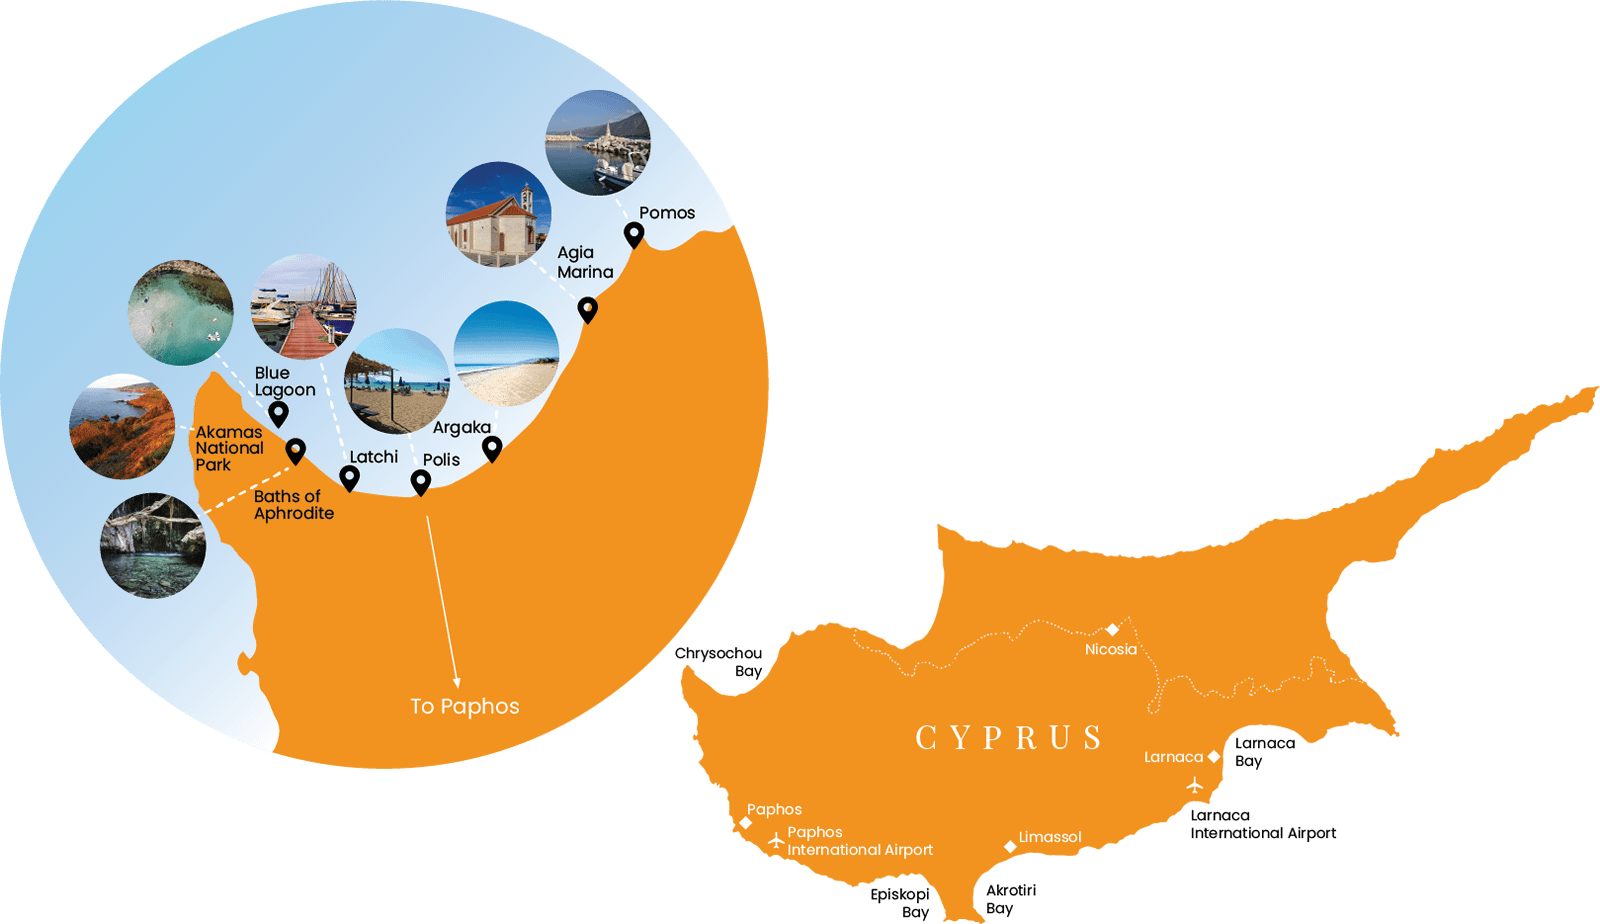 Polis Chrysochous Map | Polis Tourism